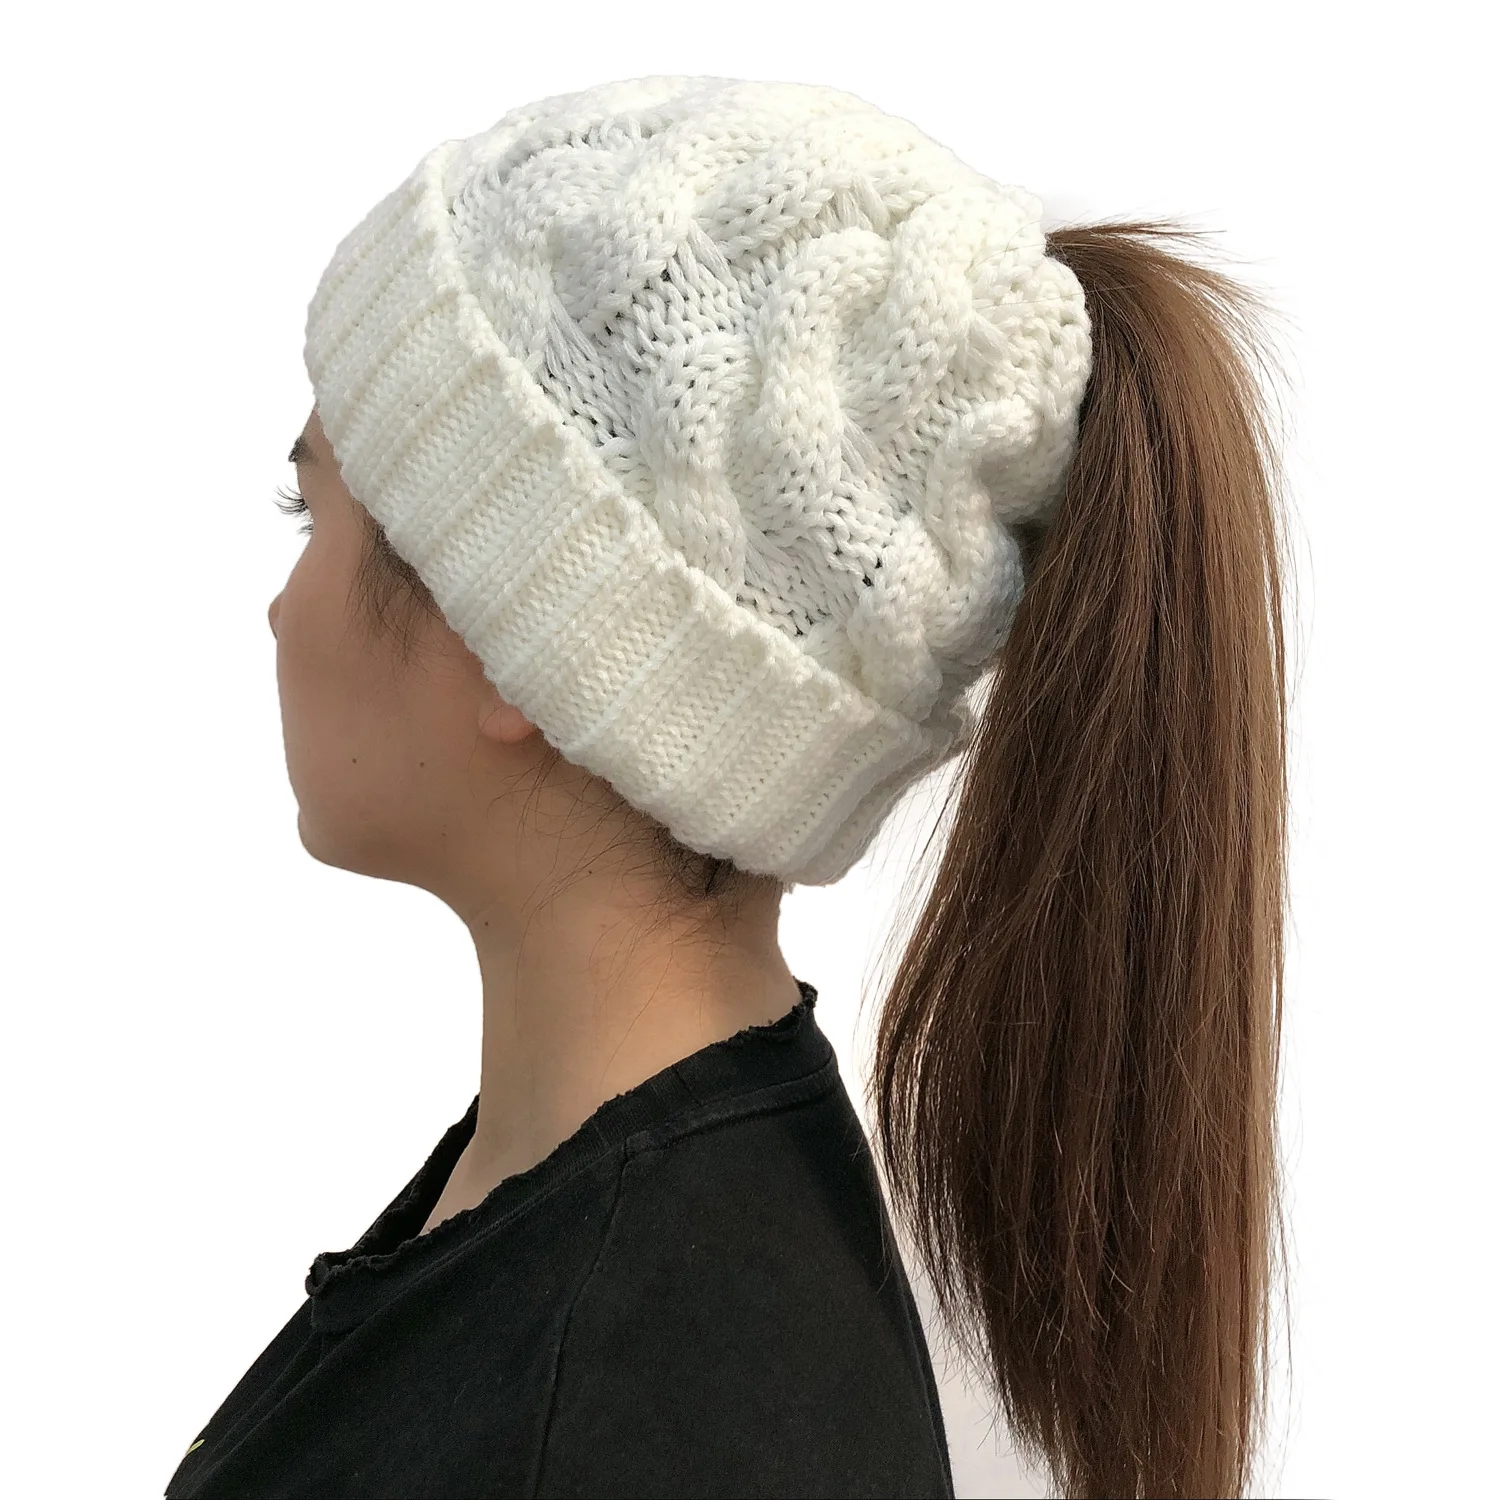 Новая мода горячая Распродажа Женская шапка осень зима толстый теплый твист керлинг вязанный конский хвост шерстяной свитер шапка для девочки